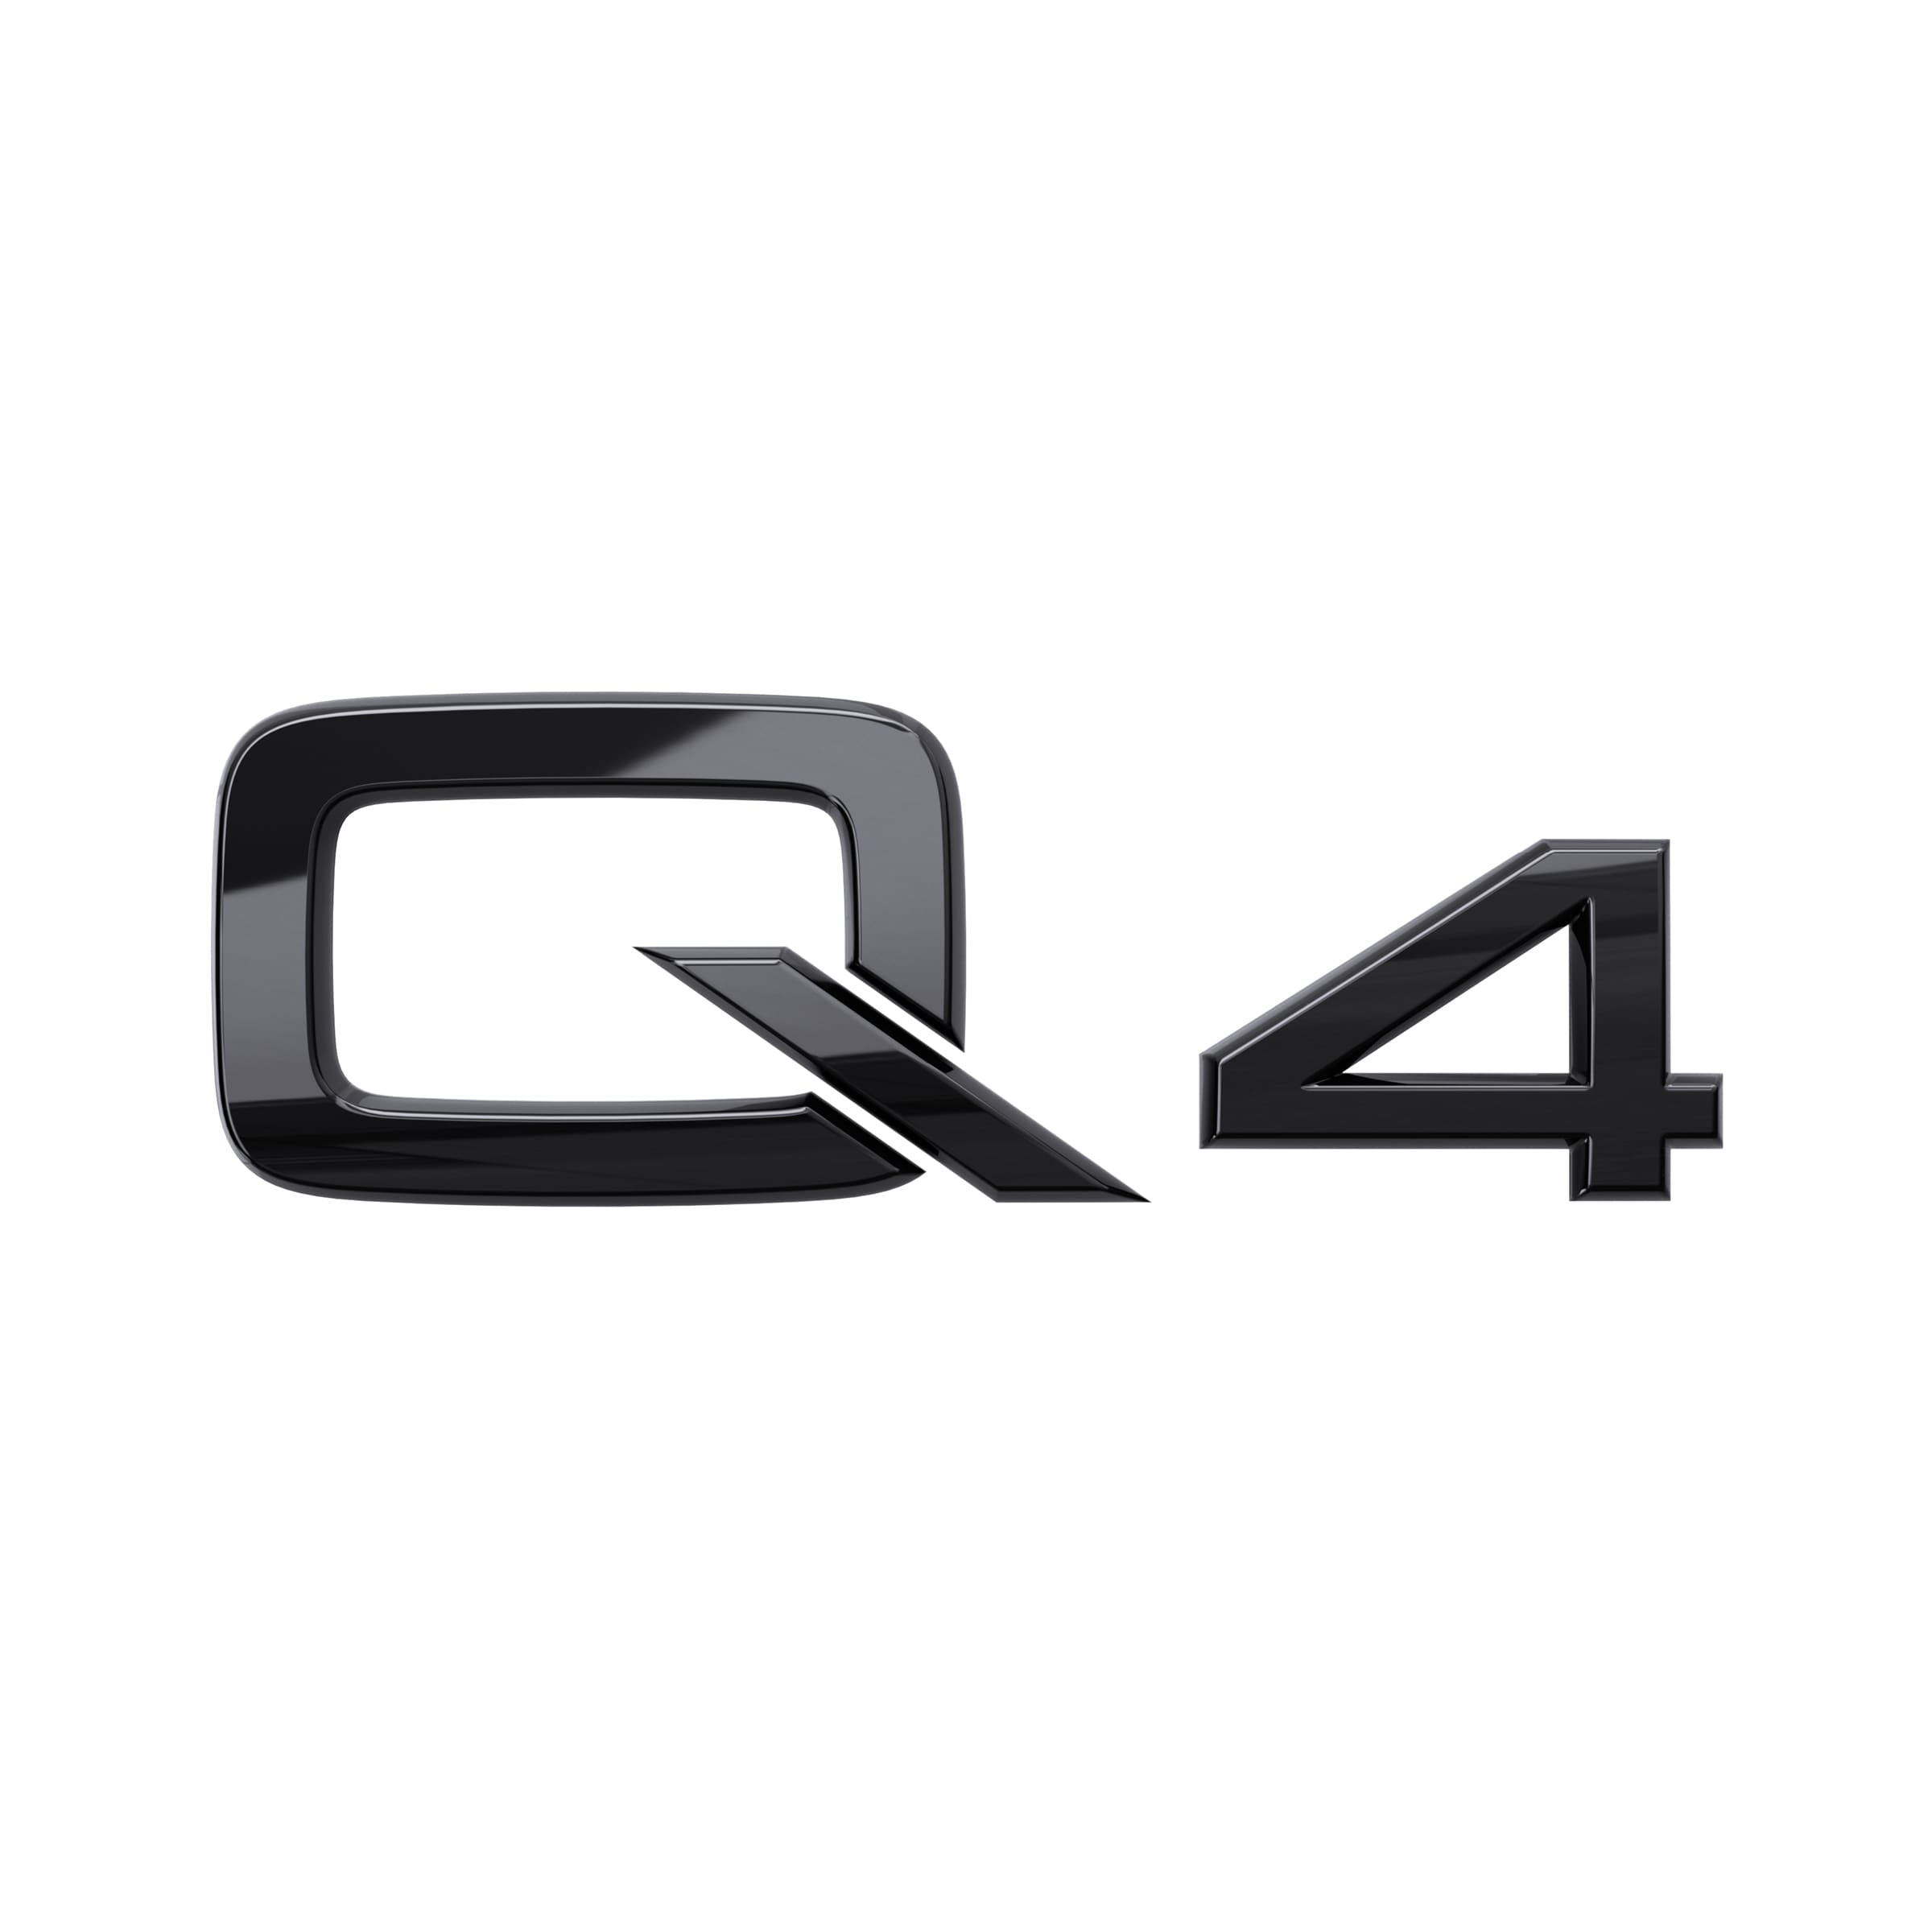 Modellbezeichnung Q4 in Schwarz